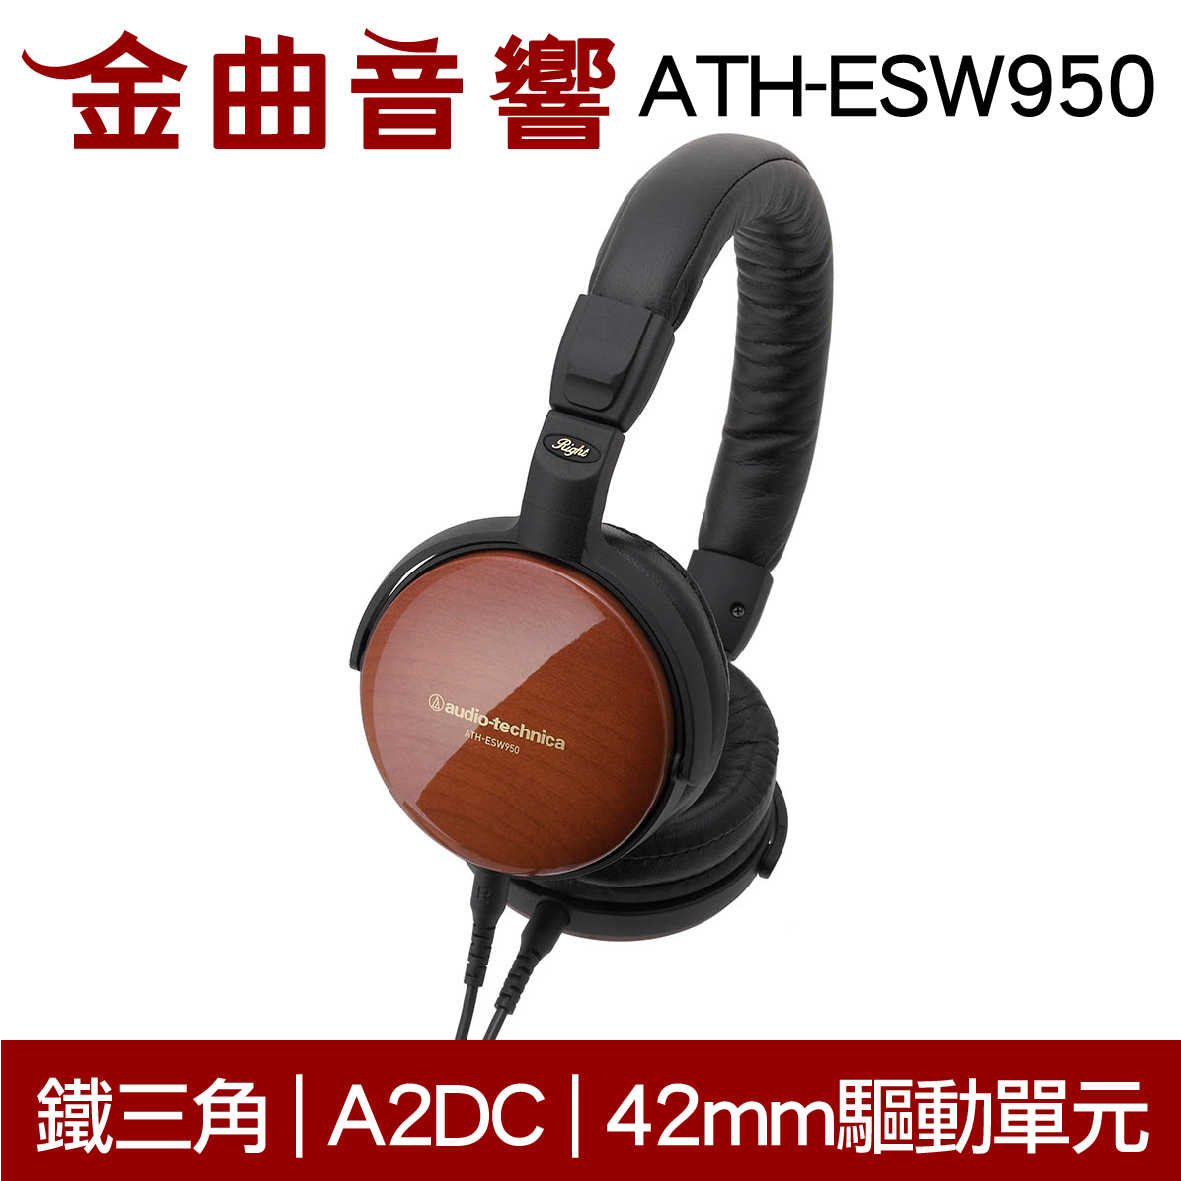 鐵三角 ATH-ESW950 木殼 輕量 小型 便攜 耳罩式耳機 | 金曲音響